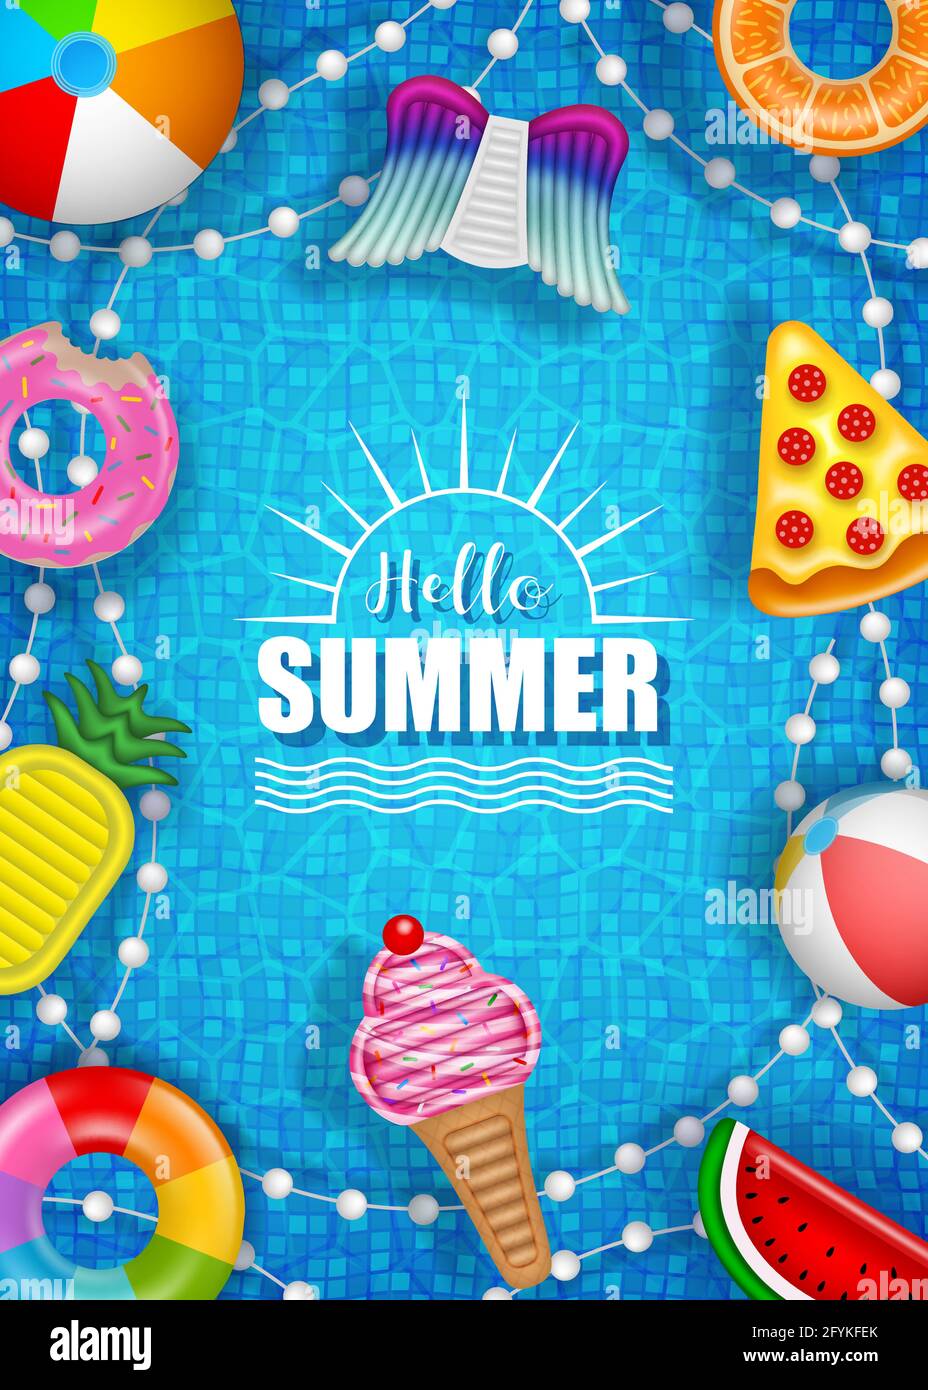 Hallo Sommer Poster mit bunten aufblasbaren Kugeln, Matratzen und Ringen auf Pool Wasser Hintergrund Stock Vektor